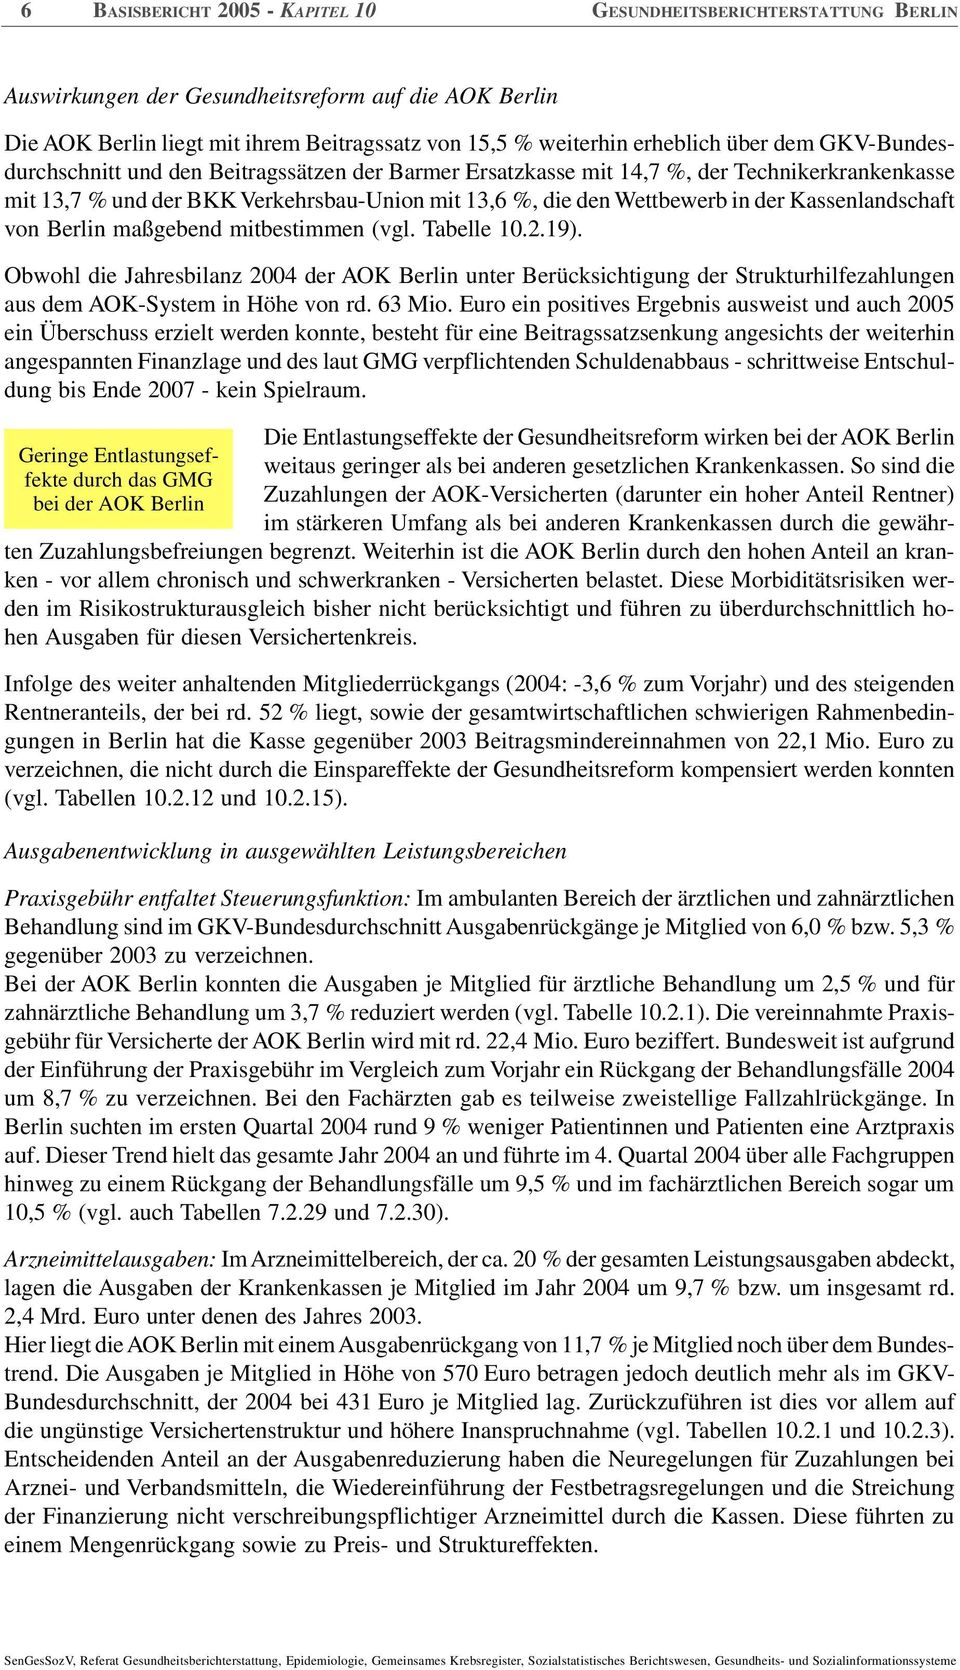 Kassenlandschaft von Berlin maßgebend mitbestimmen (vgl. Tabelle 10.2.19).